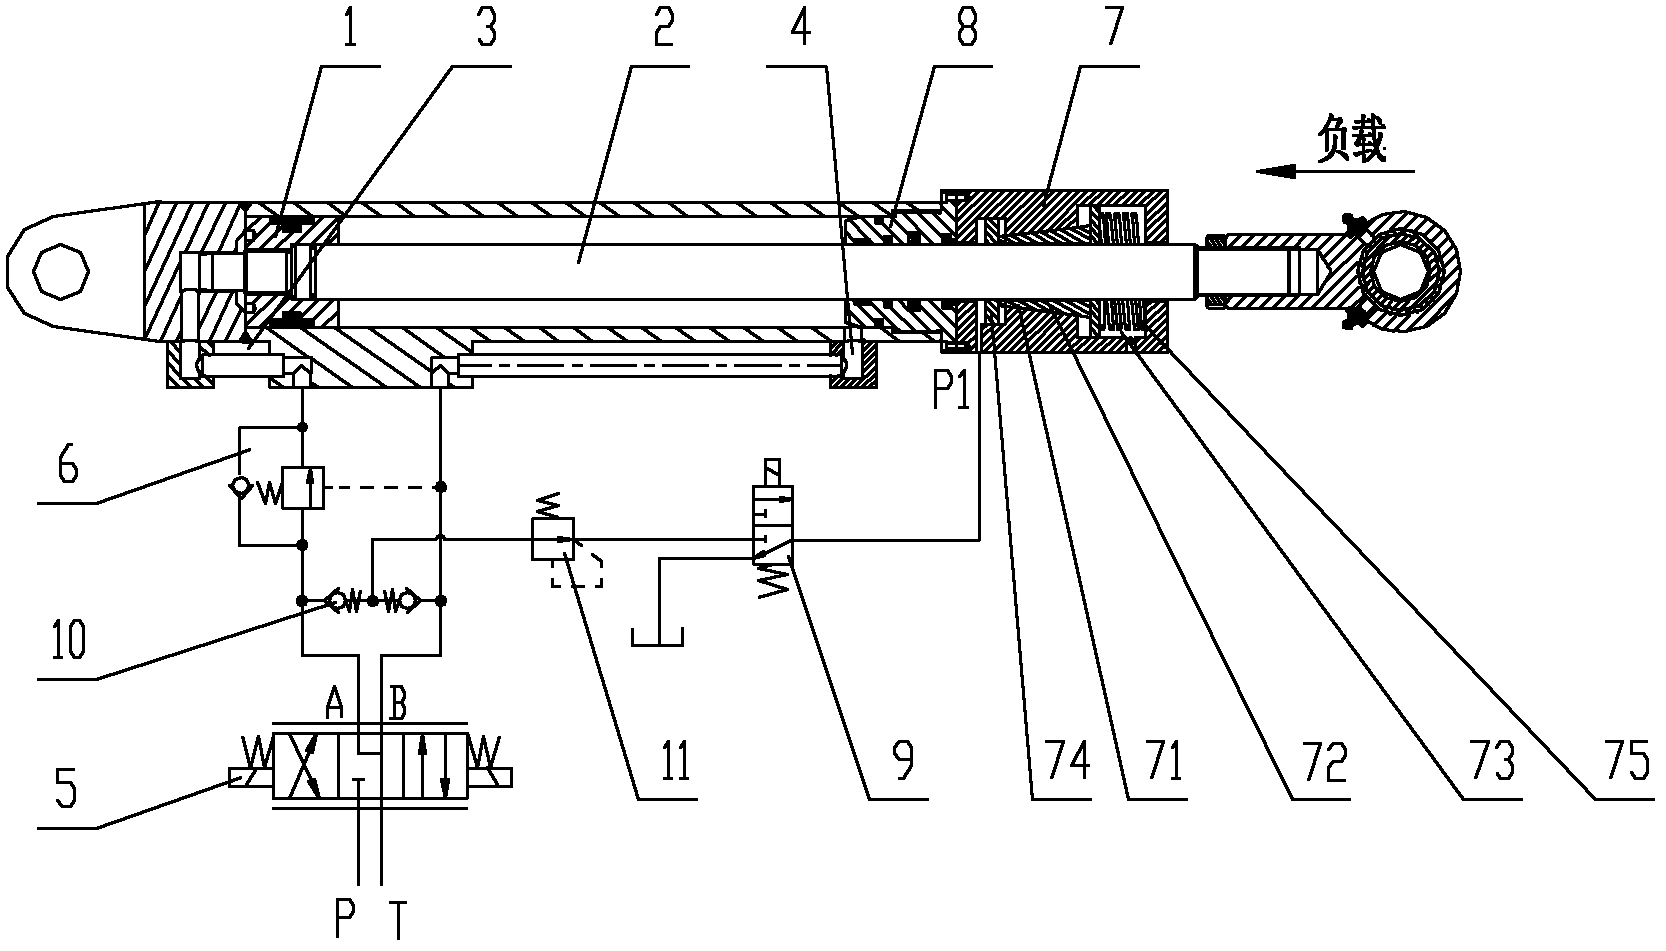 Hydraulic cylinder, hydraulic system and engineering machine